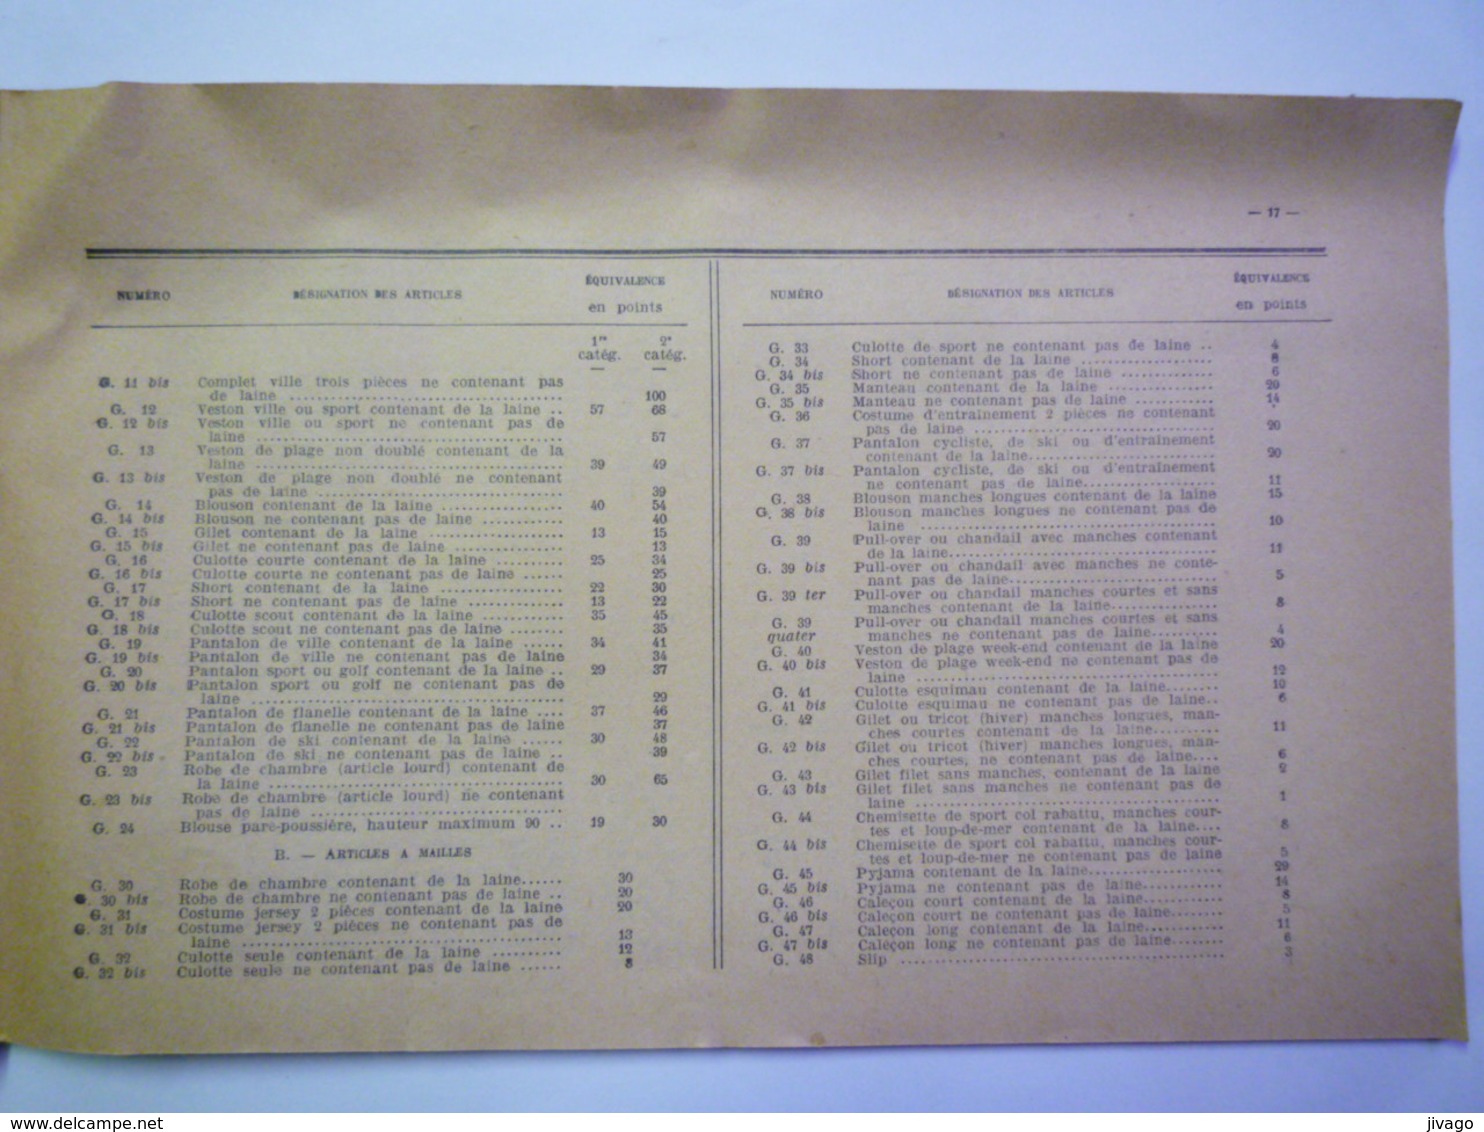 2020 - 5628  Réforme Des Lois Sur Les TEXTILES  1942  (32 Pages)  XXX - Non Classés